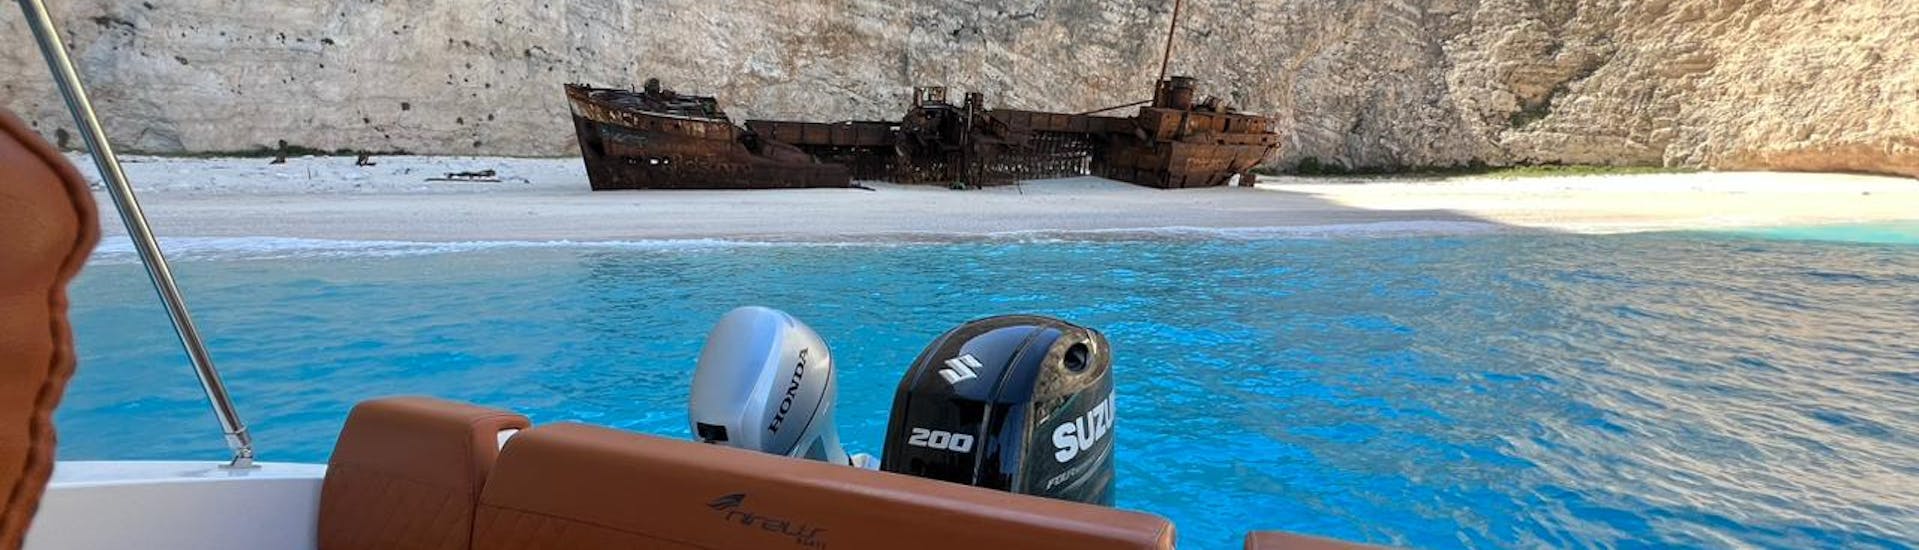 Der Blick auf das Berühmte Schiffswrack von Navagio während der Privaten Bootstour zum Schiffswrack-Strand und den Blauen Grotten mit Schnorcheln mit Mistral Rentals Zakynthos.